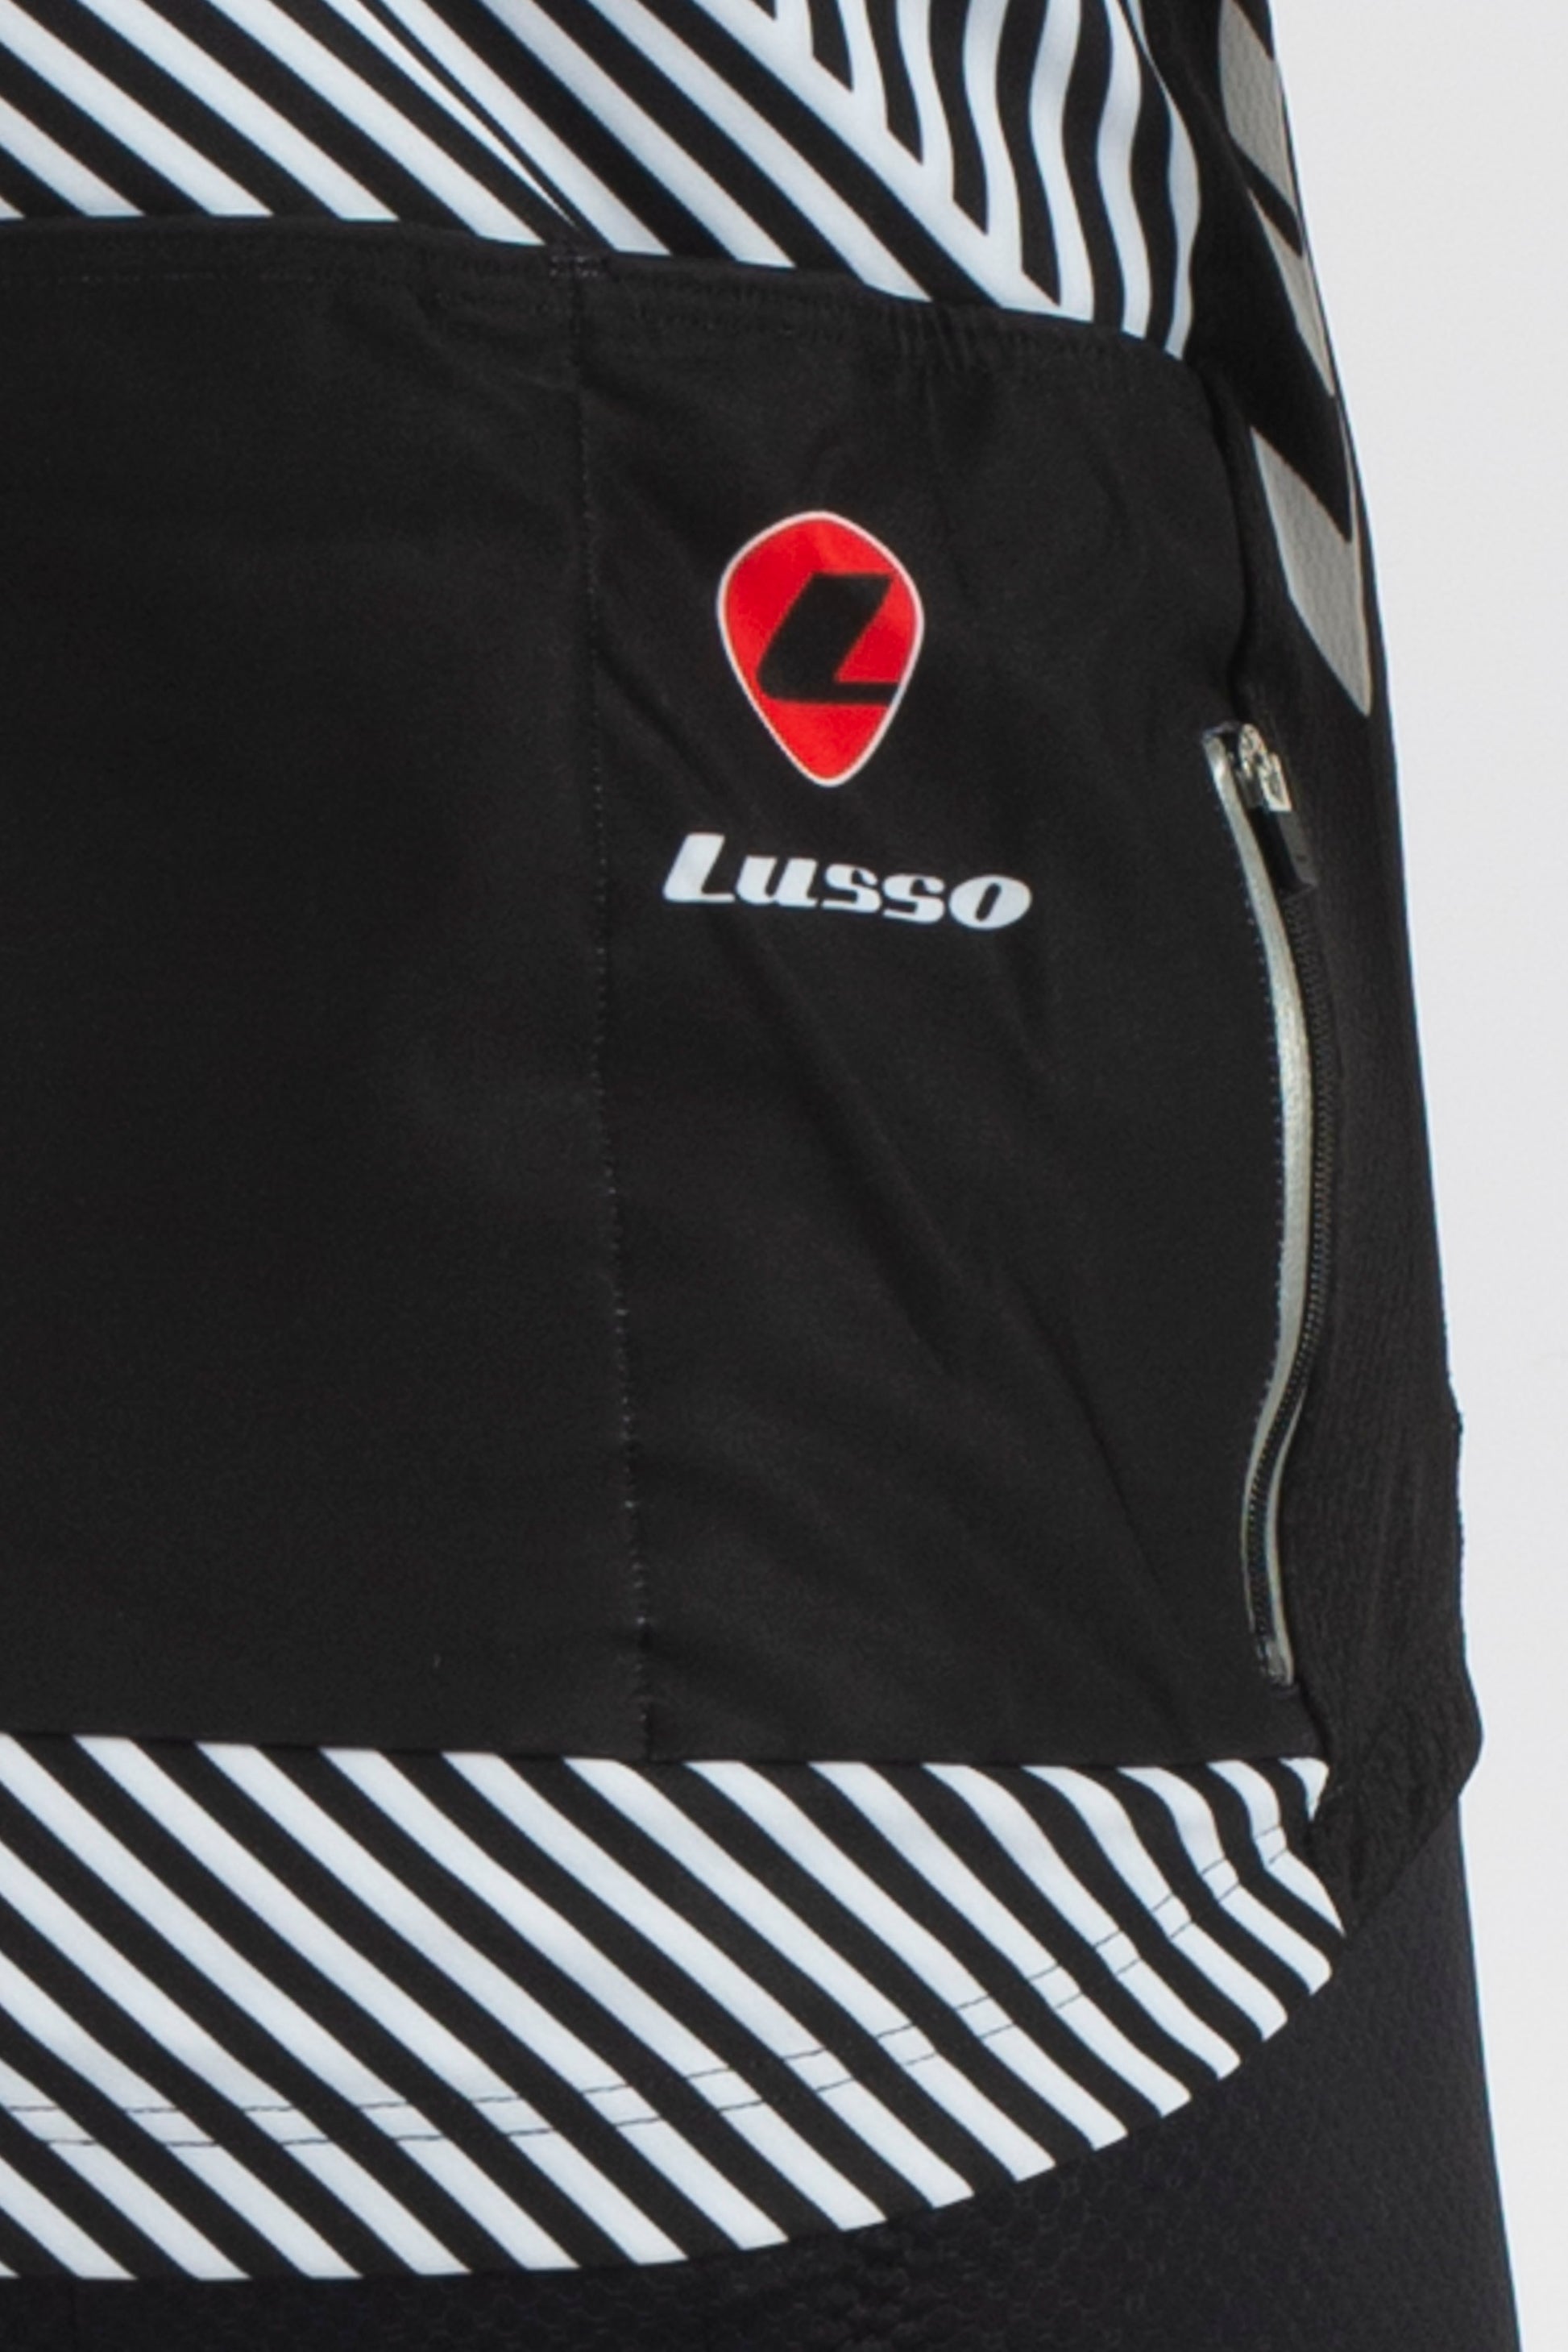 Stripes Long Sleeve Jersey - Lusso Cycle Wear